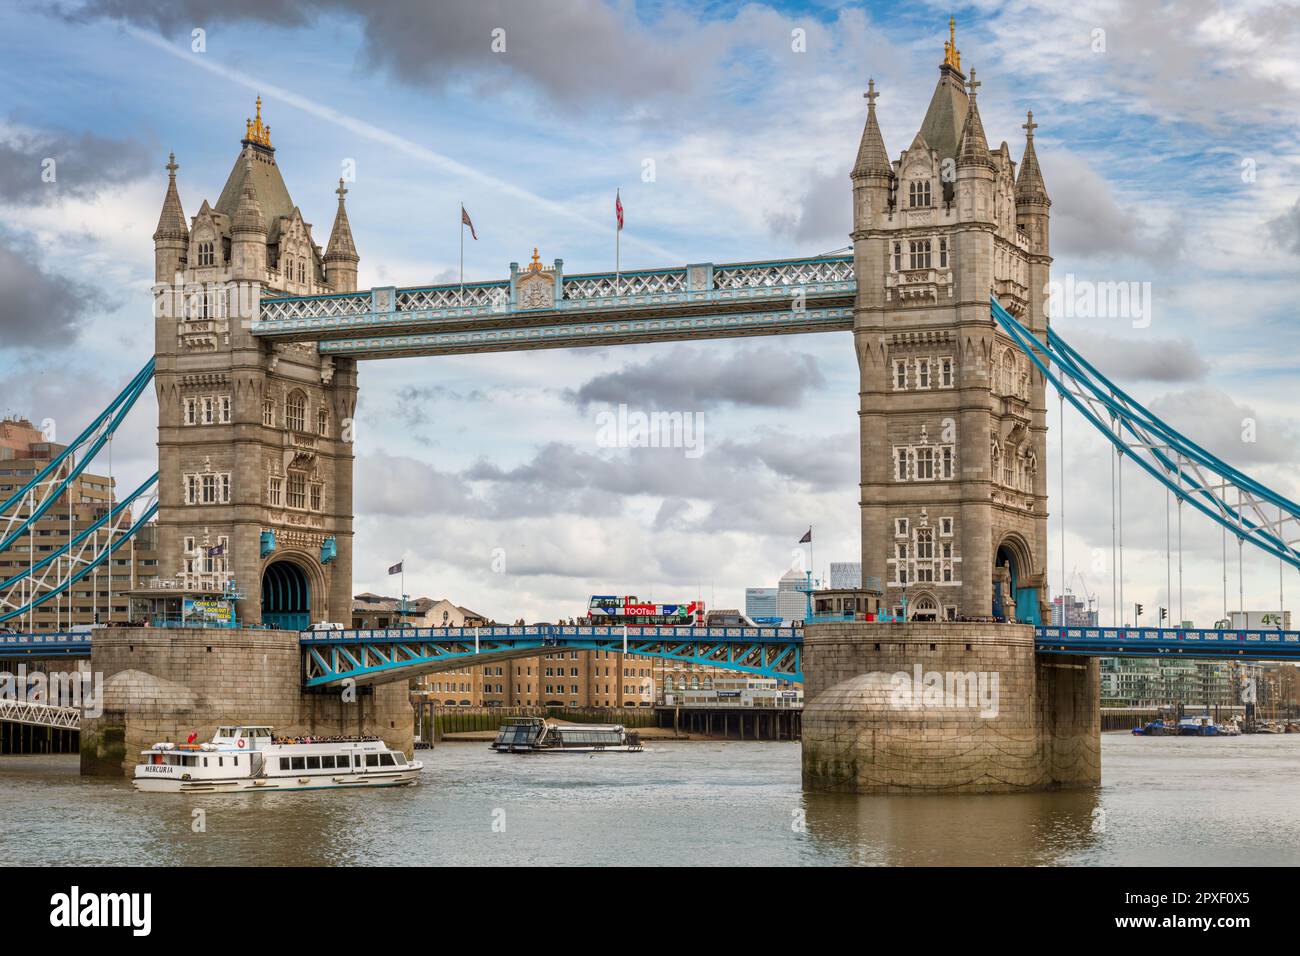 L'emblématique Tower Bridge, reconnu dans le monde entier, est un bâtiment classé de catégorie I et traverse la Tamise près de la Tour de Londres et de la ville Banque D'Images